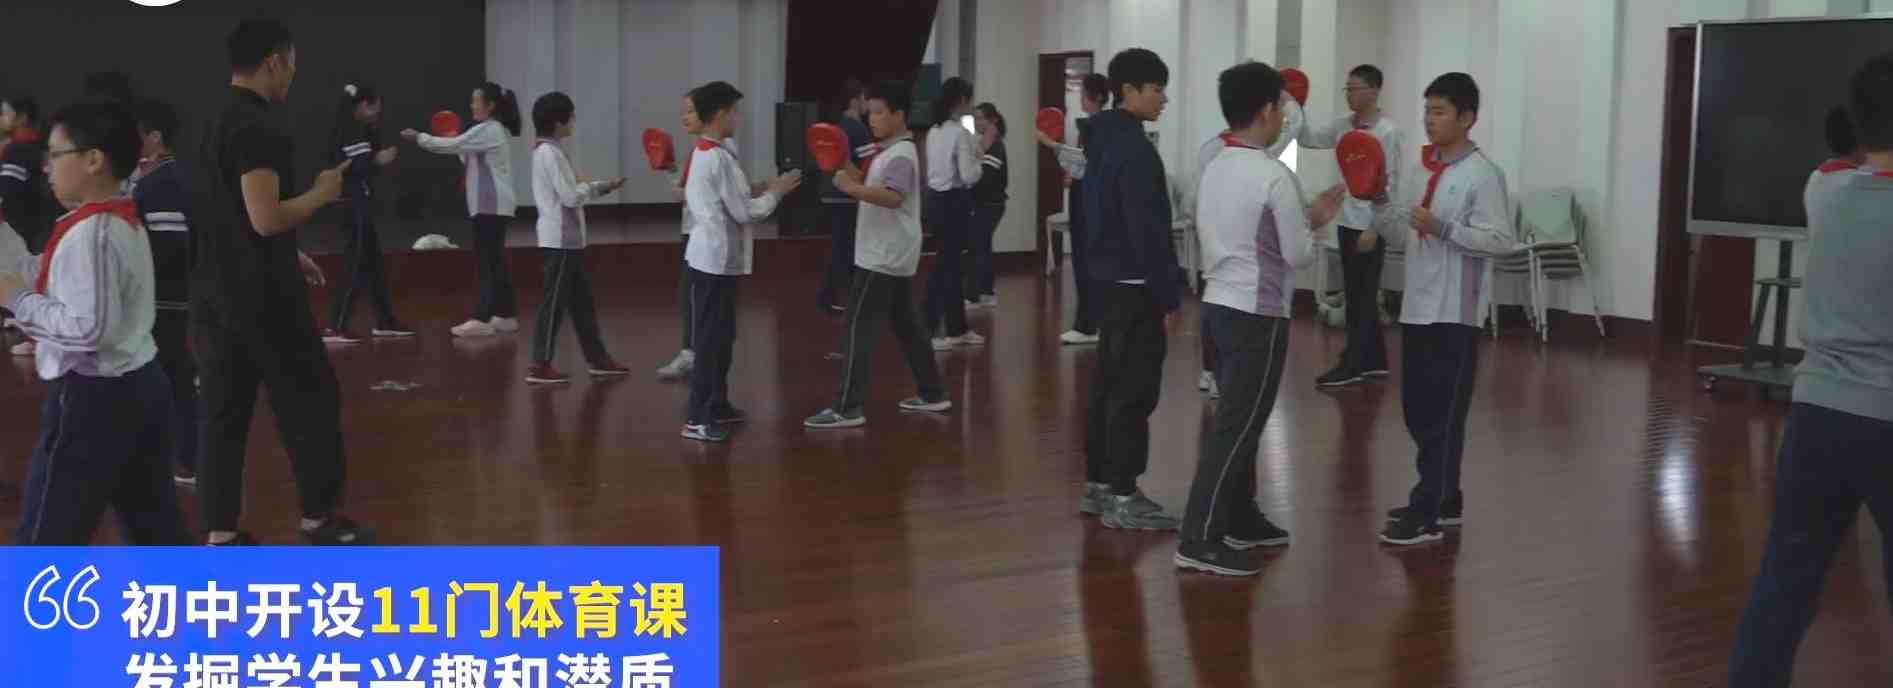 上海一初中开11门体育课-11门体育课要另外收学费吗-第2张图片